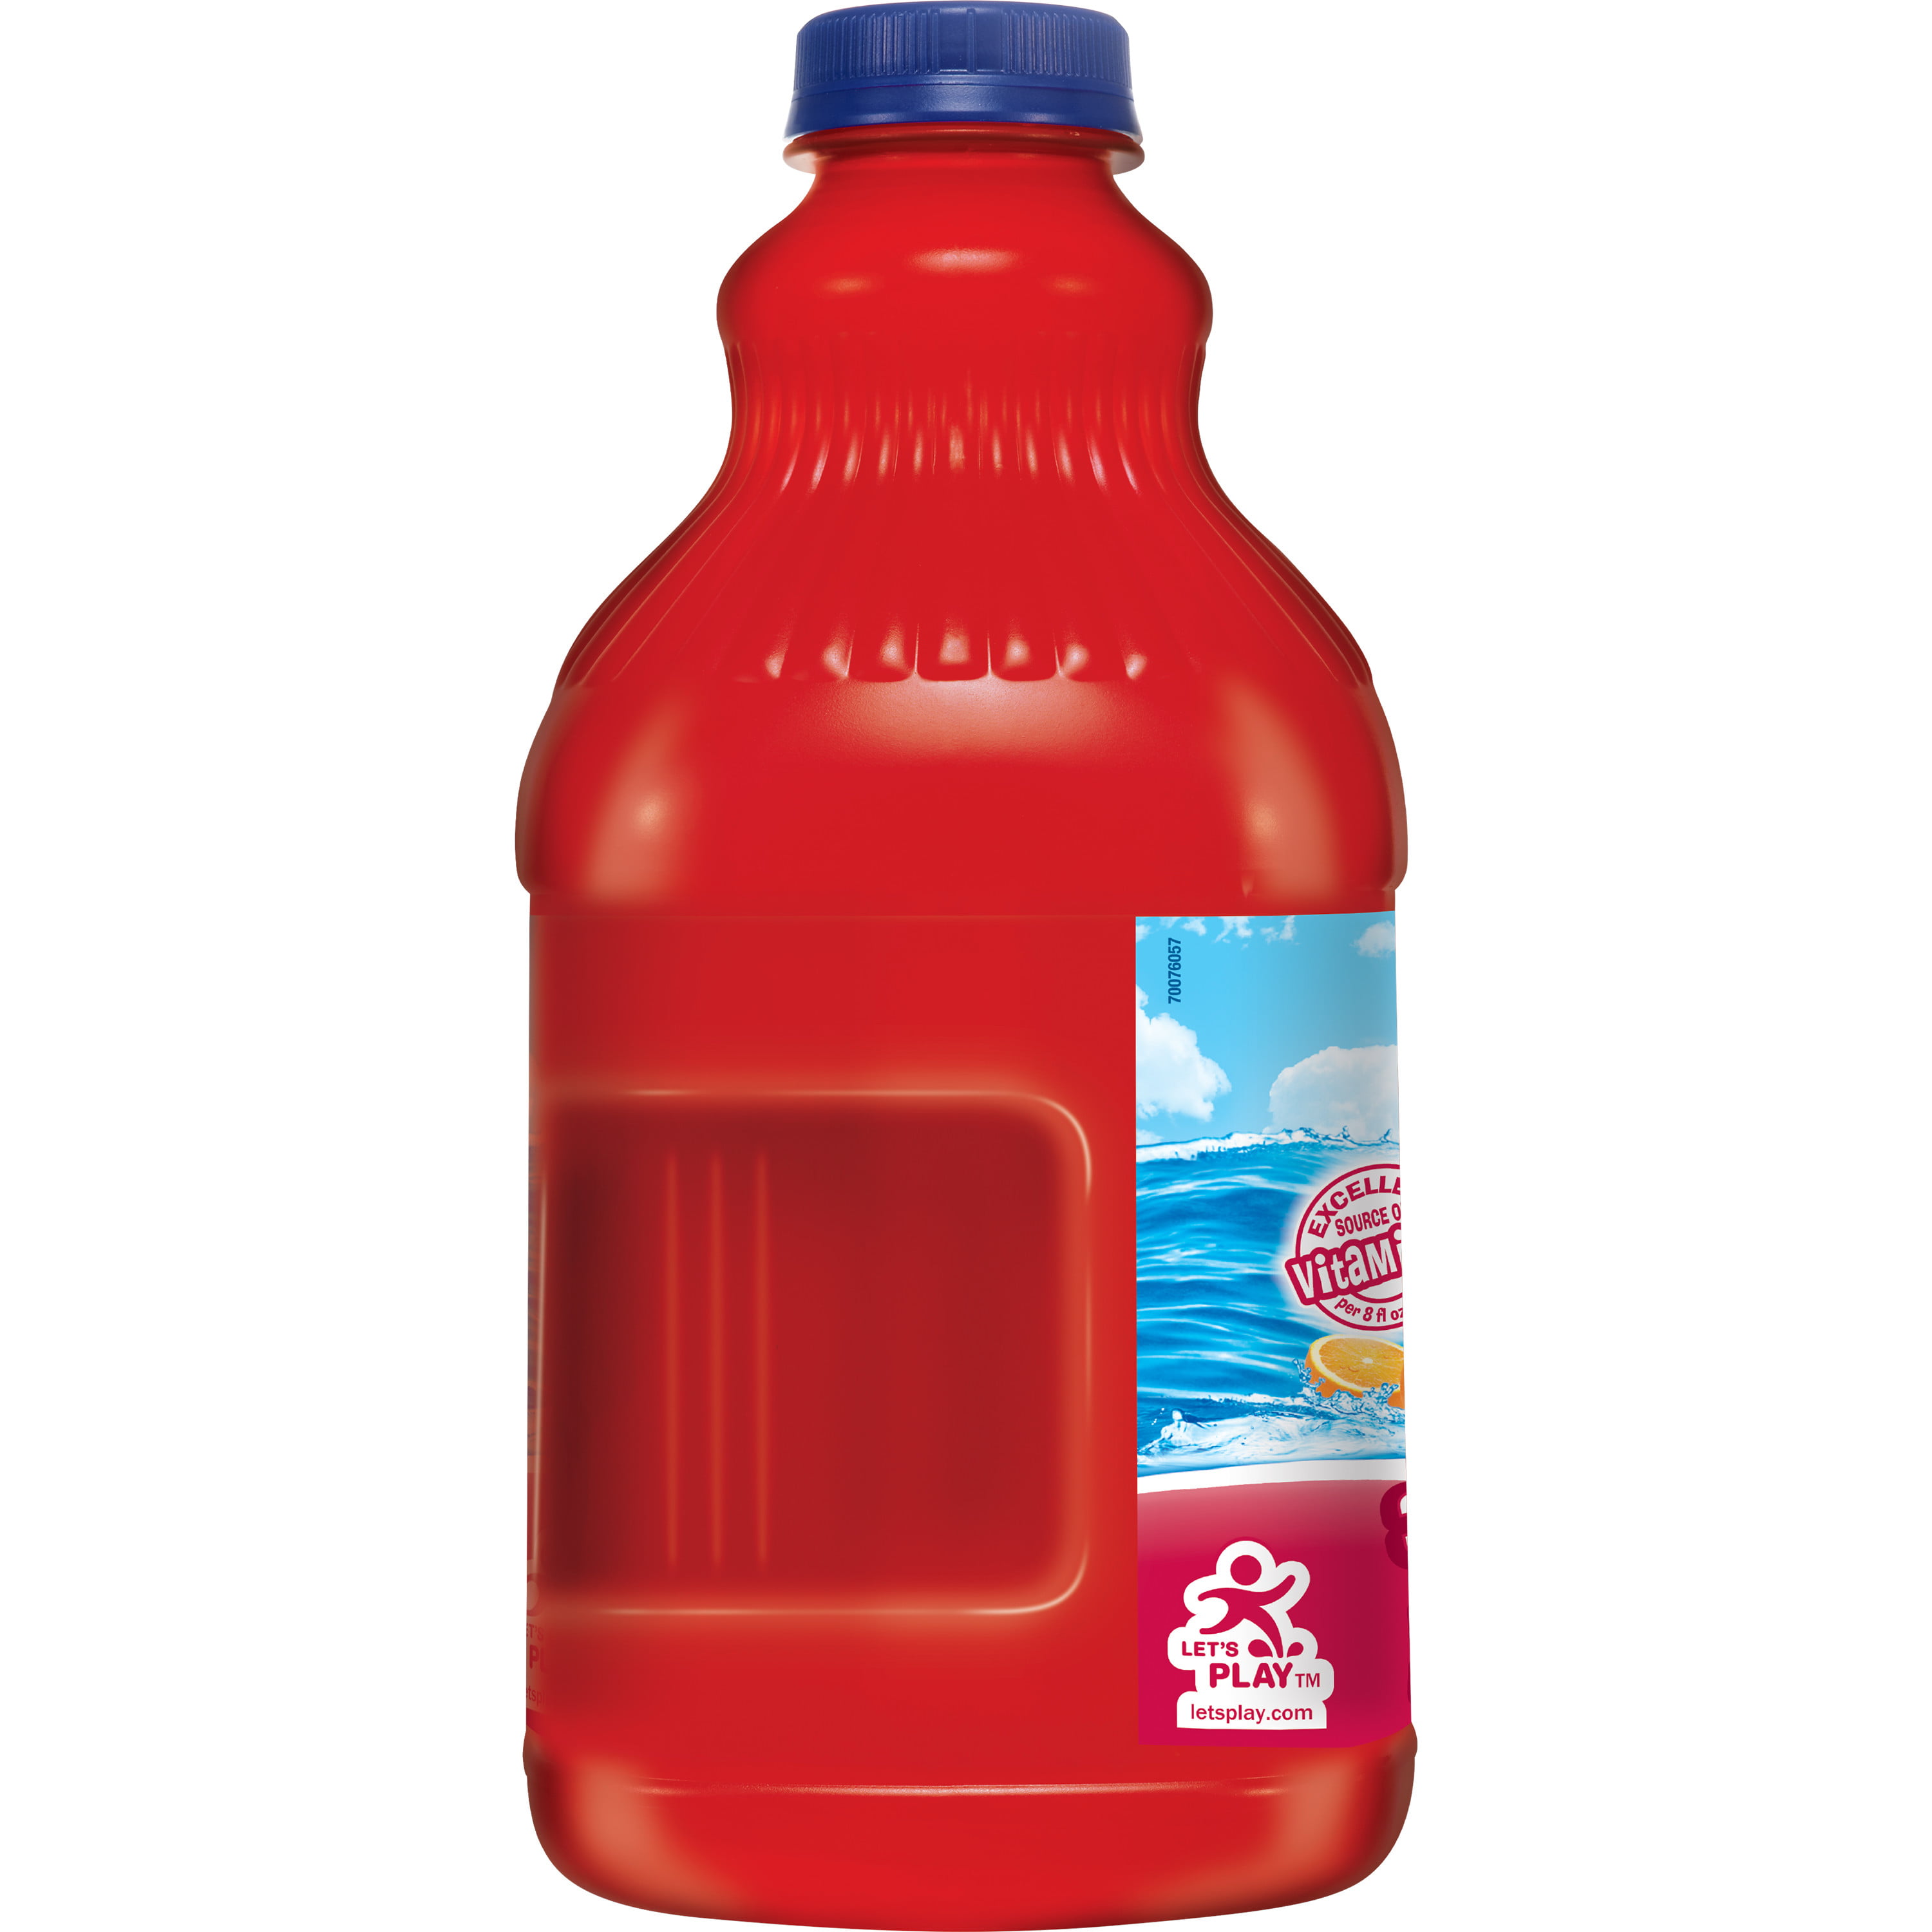 Hawaiian Punch Juice Drink, Fruit Juicy Red « Discount Drug Mart